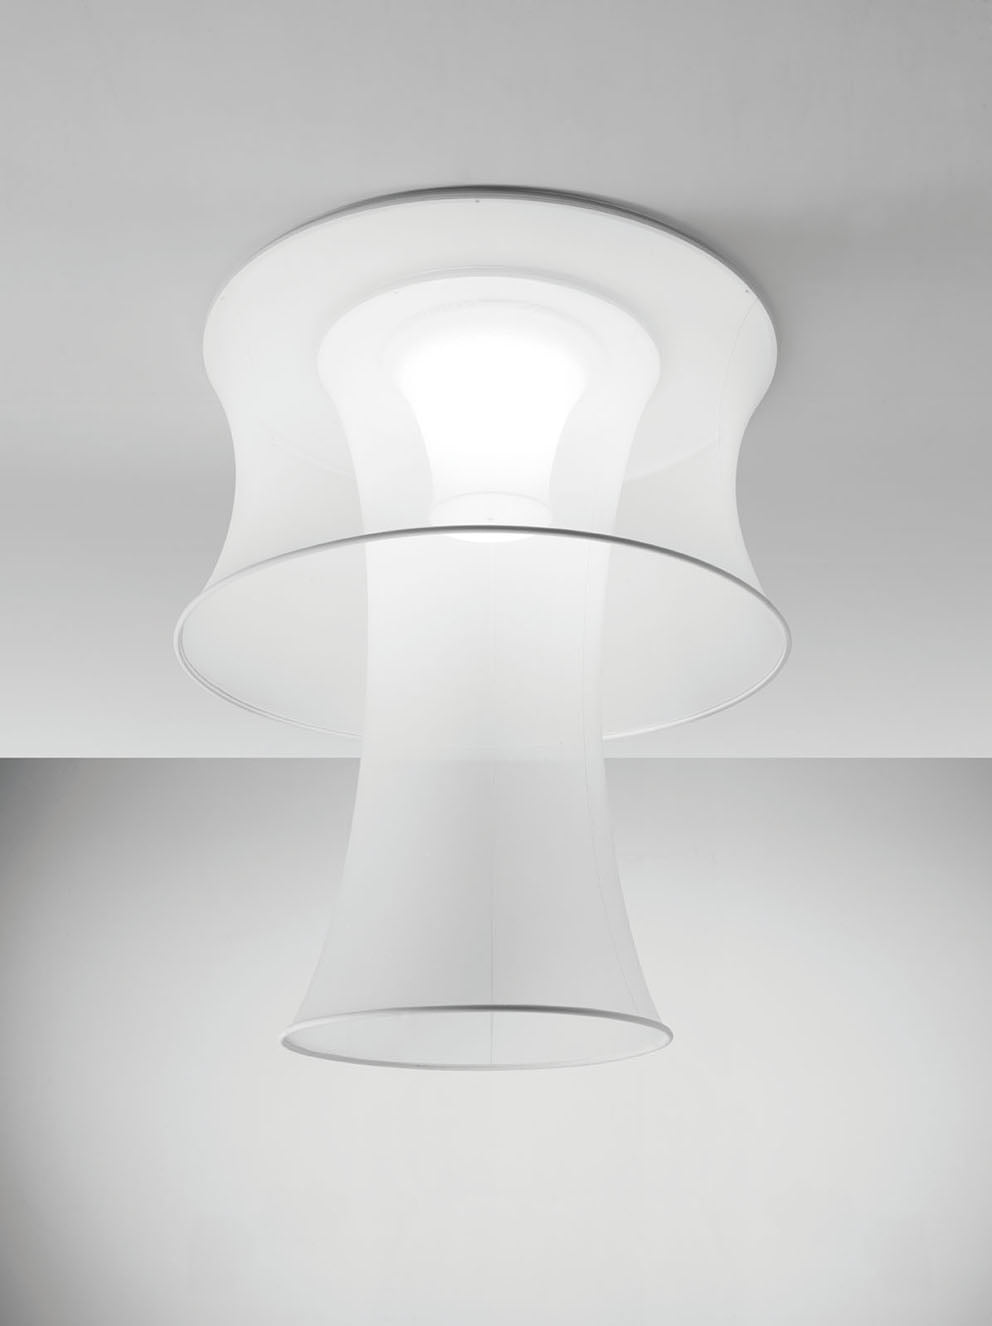 Eulerlightecture luci design axolight 5